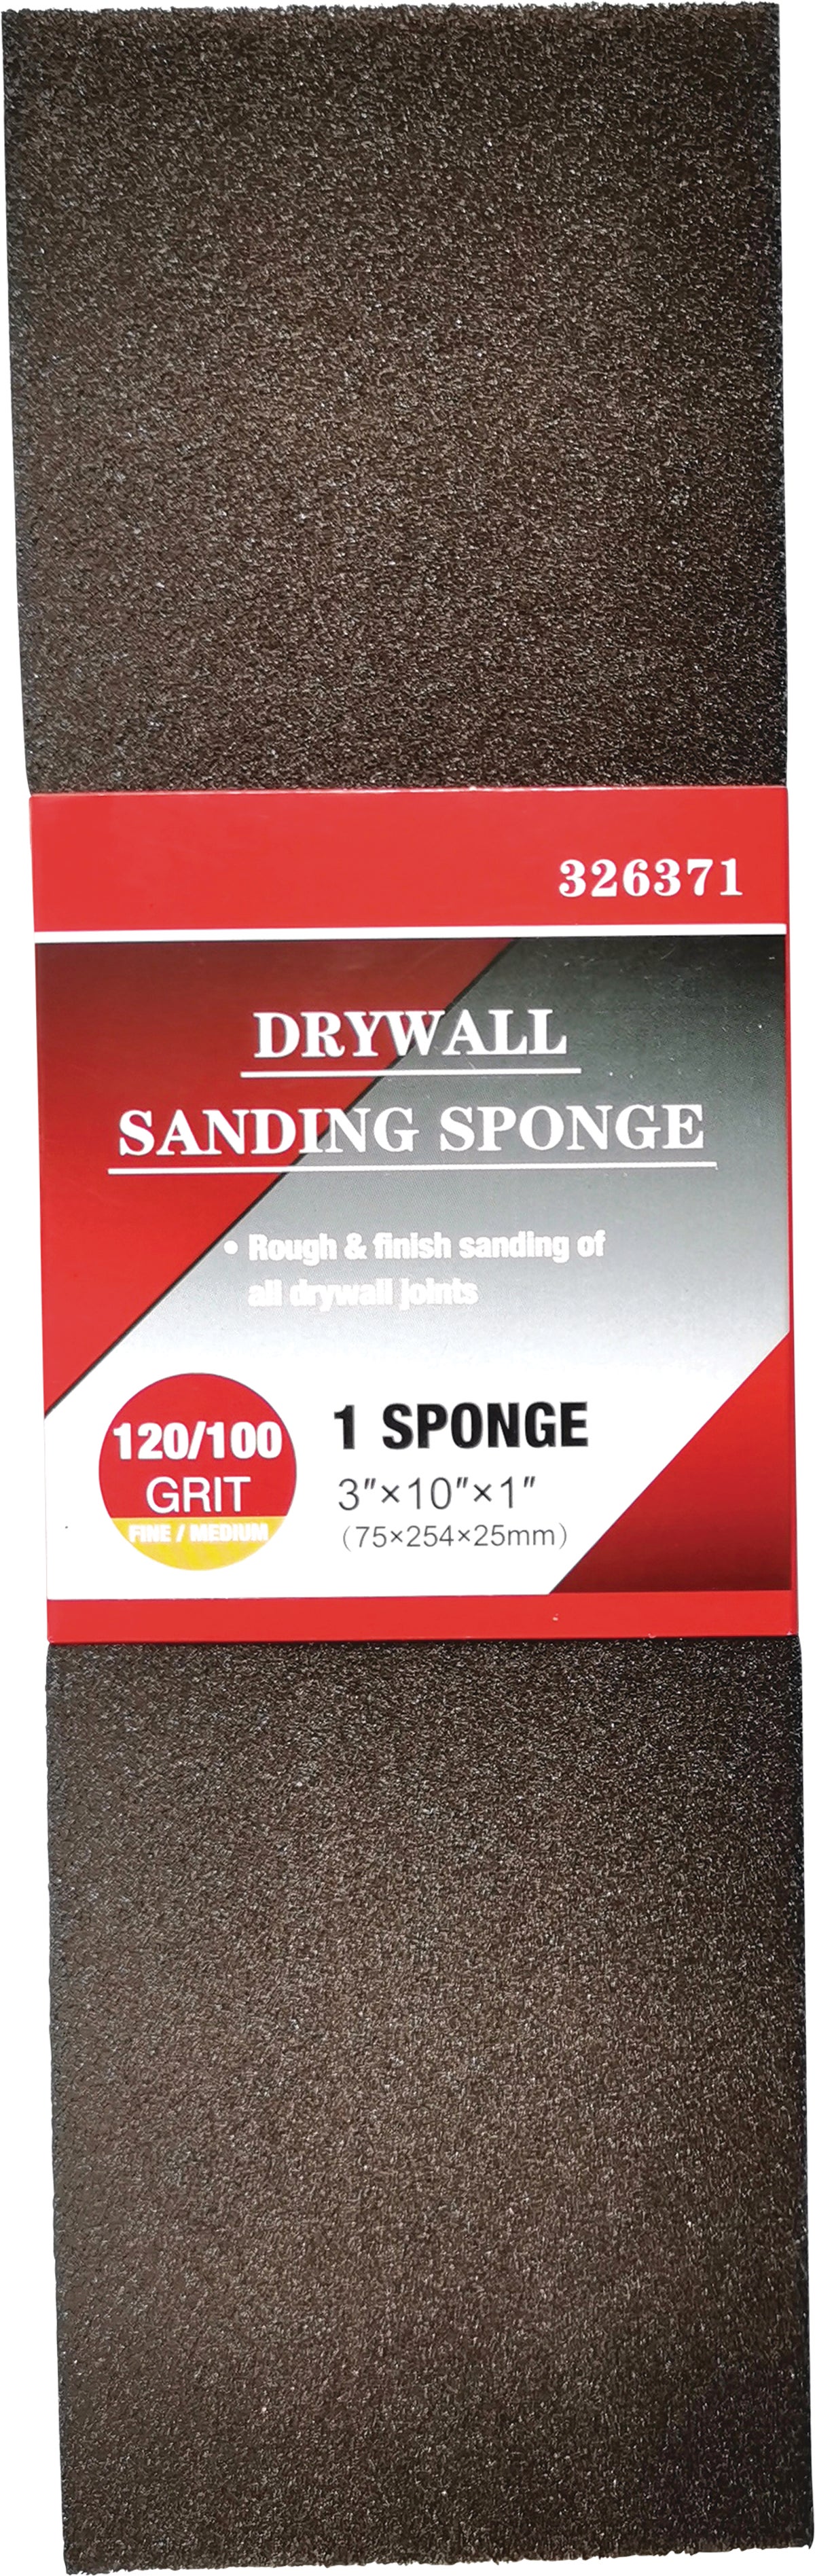 Do it Best Drywall 3 In. x 10 In. x 1 In. Fine/Medium Sanding